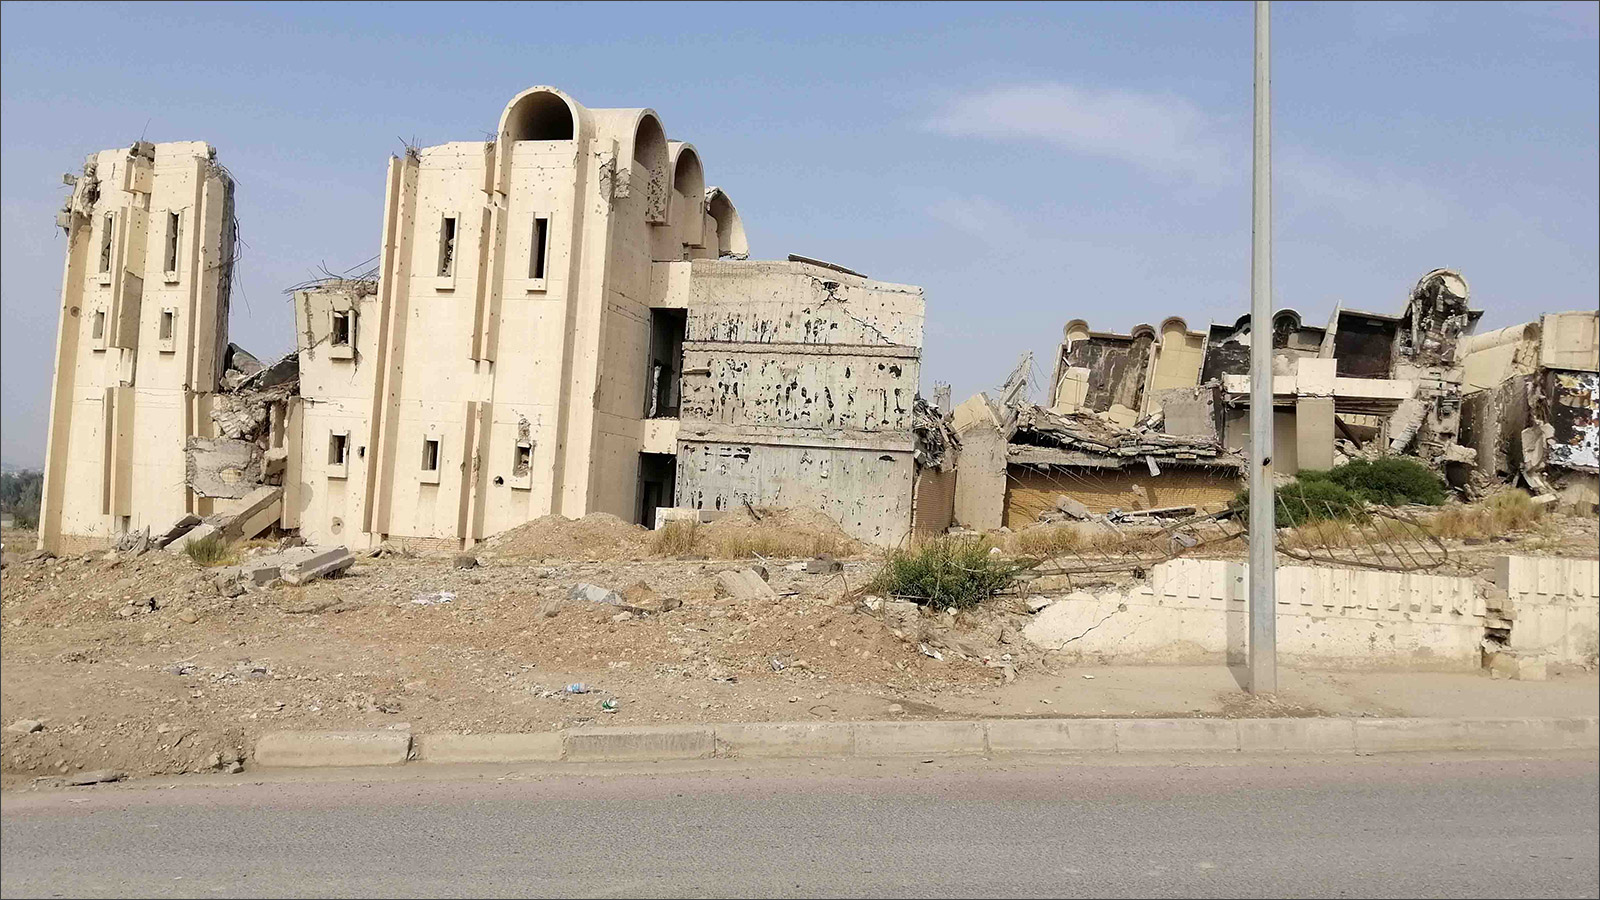 فندق الموصل الدولي الحكومي الذي أصبح أثرا بعد عين